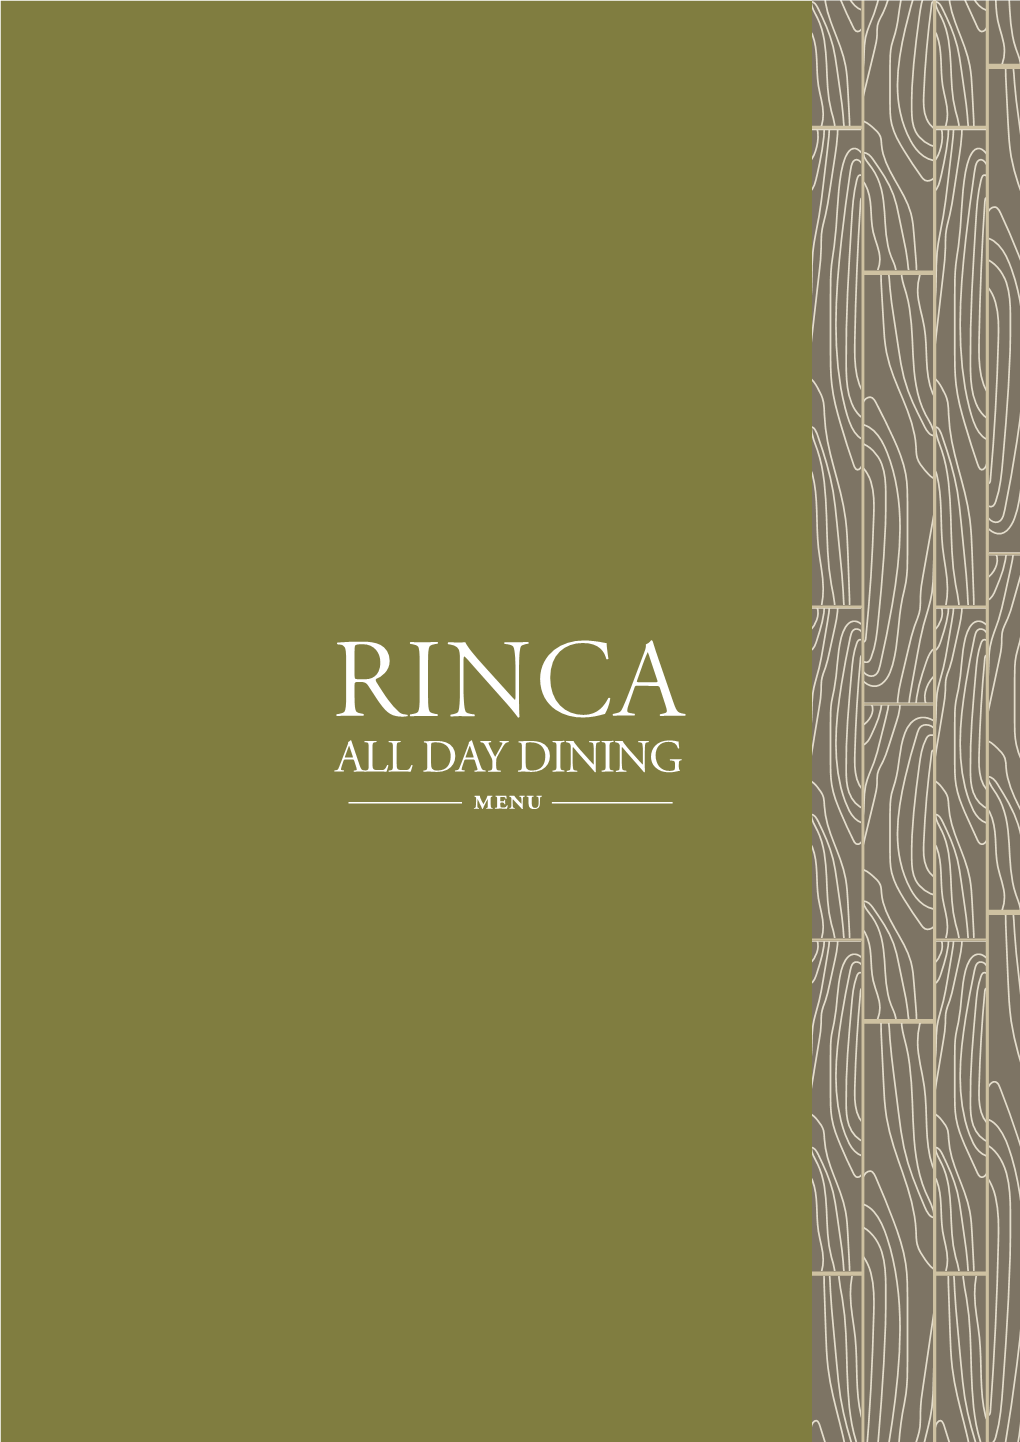 RINCA ALL DAY DINING MENU Rinca ALL DAY DINING | 11:00 - 23:00